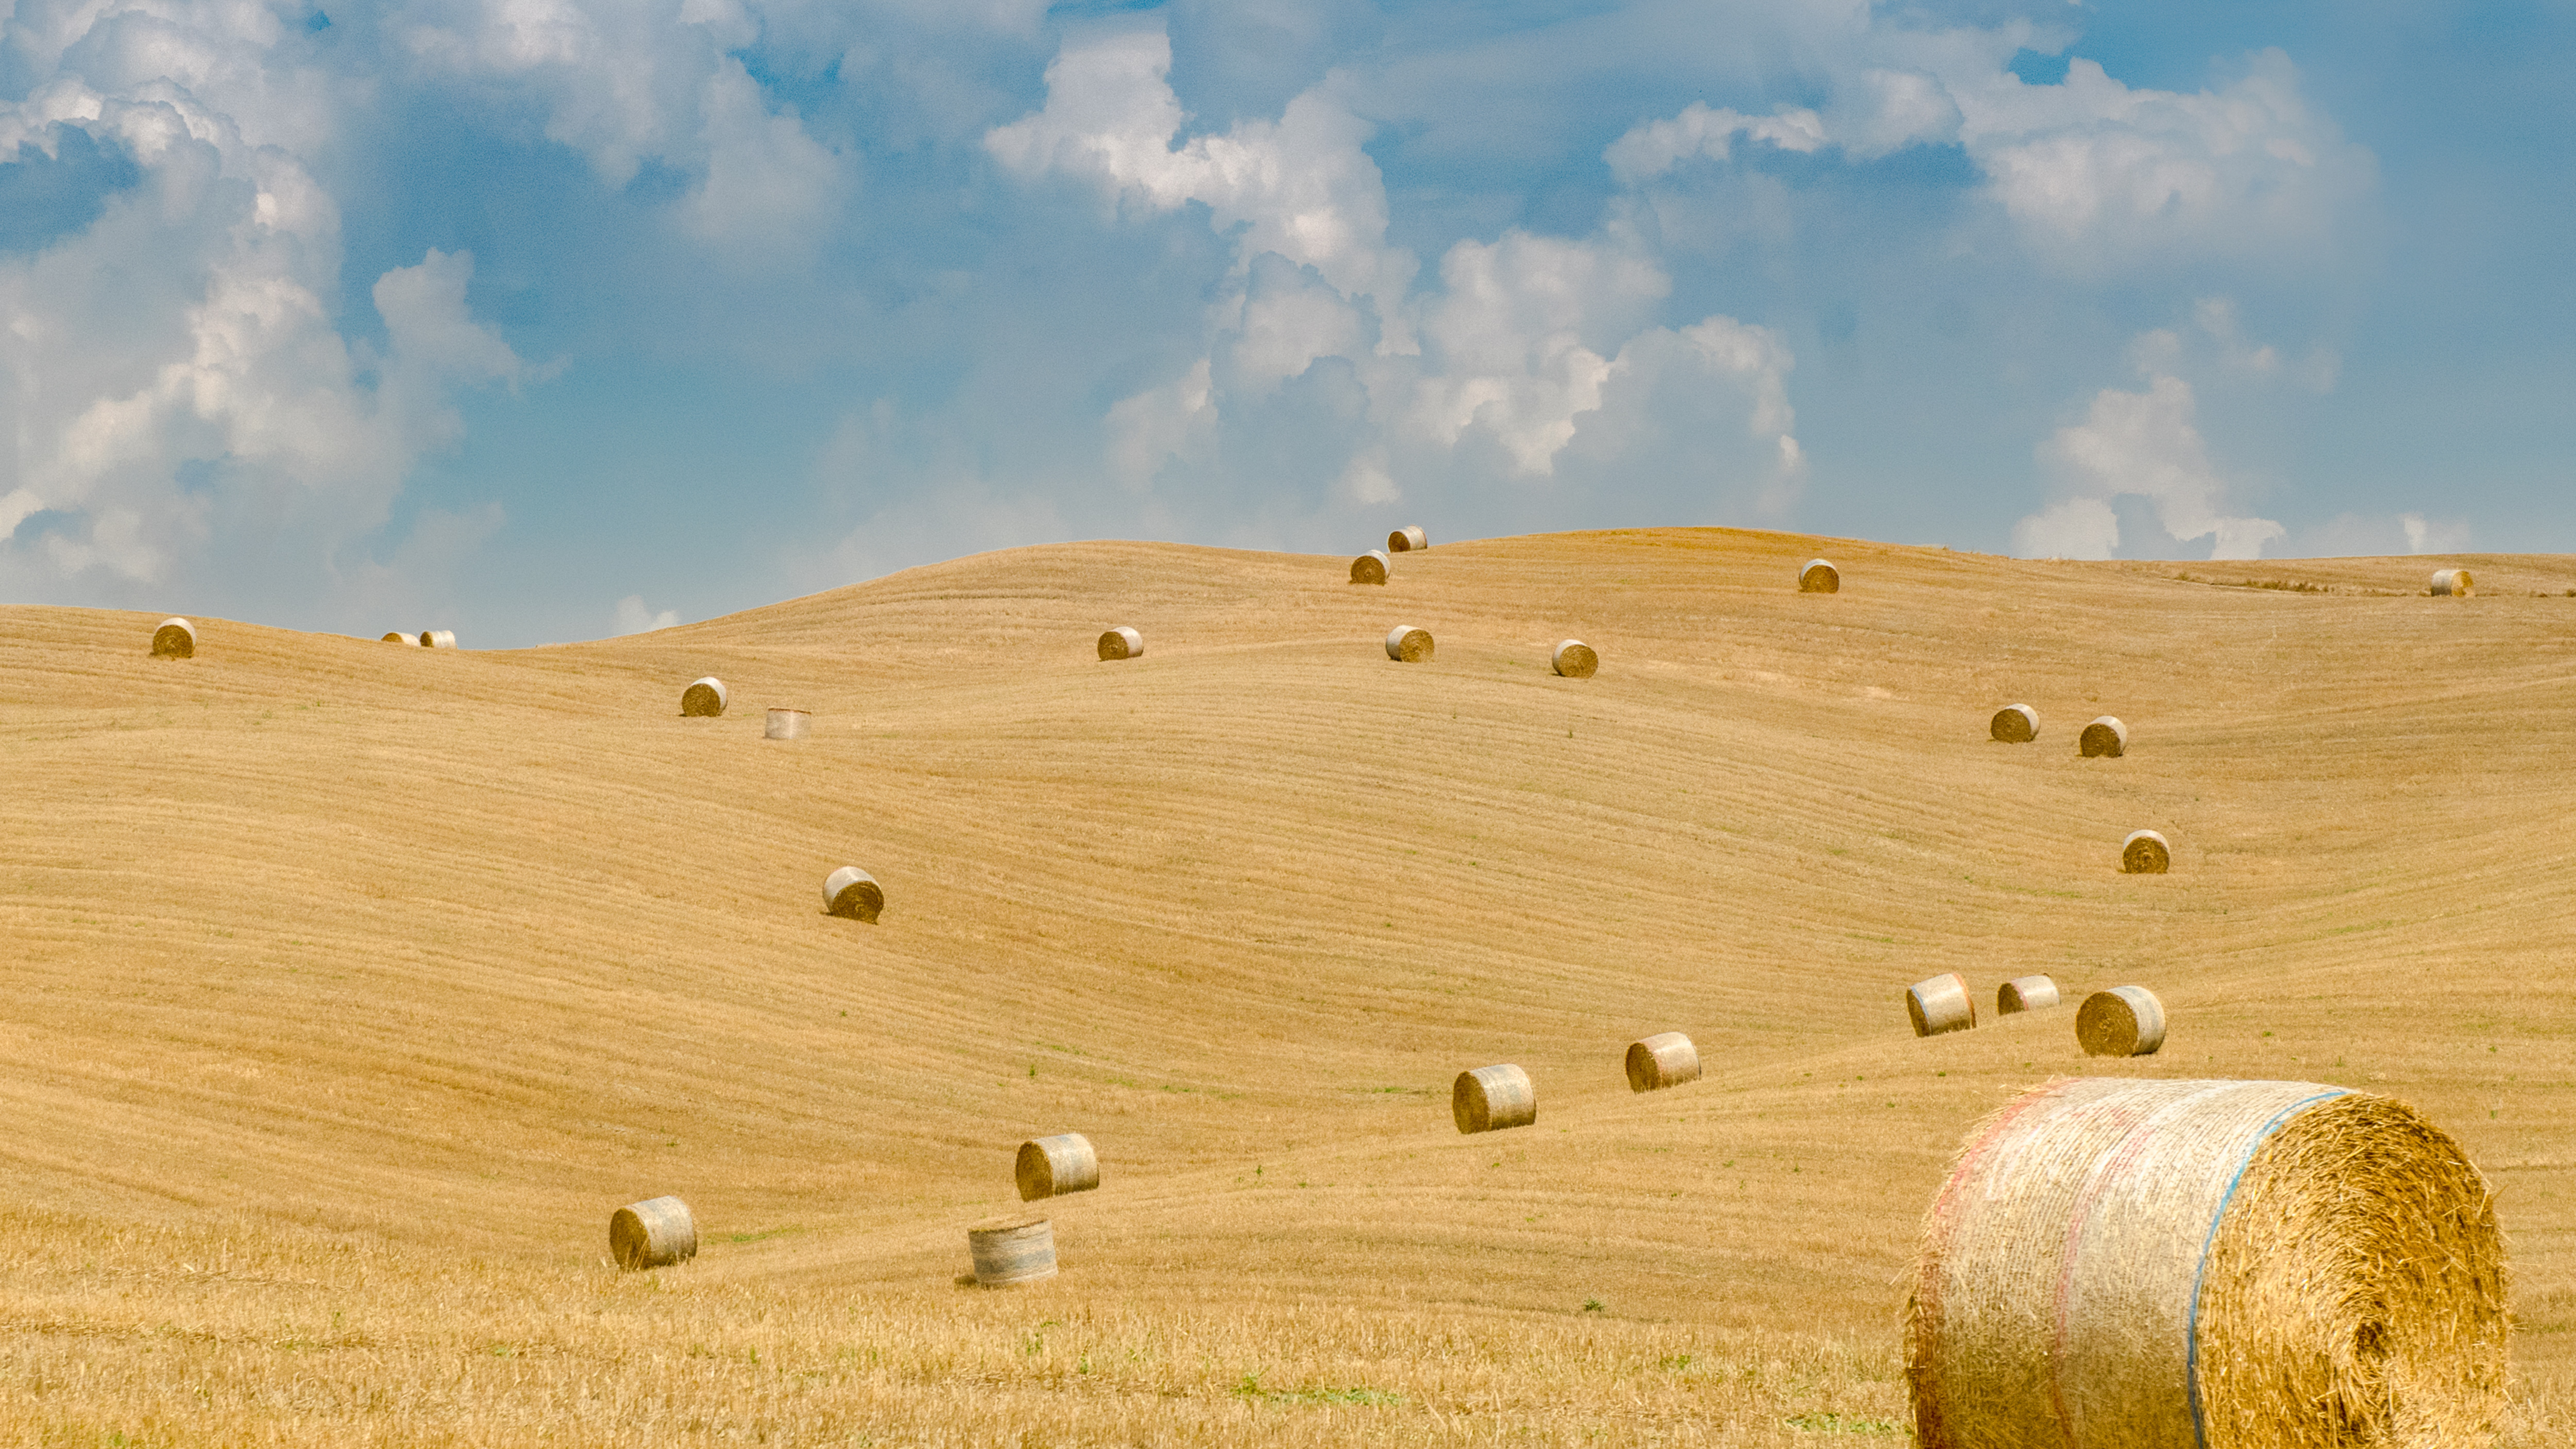 Презентация сено. Тоскана Италия стога сена. Сенокос в Тоскане. Холмы стога сена Тоскана. Беларусь тюки соломы на полях.